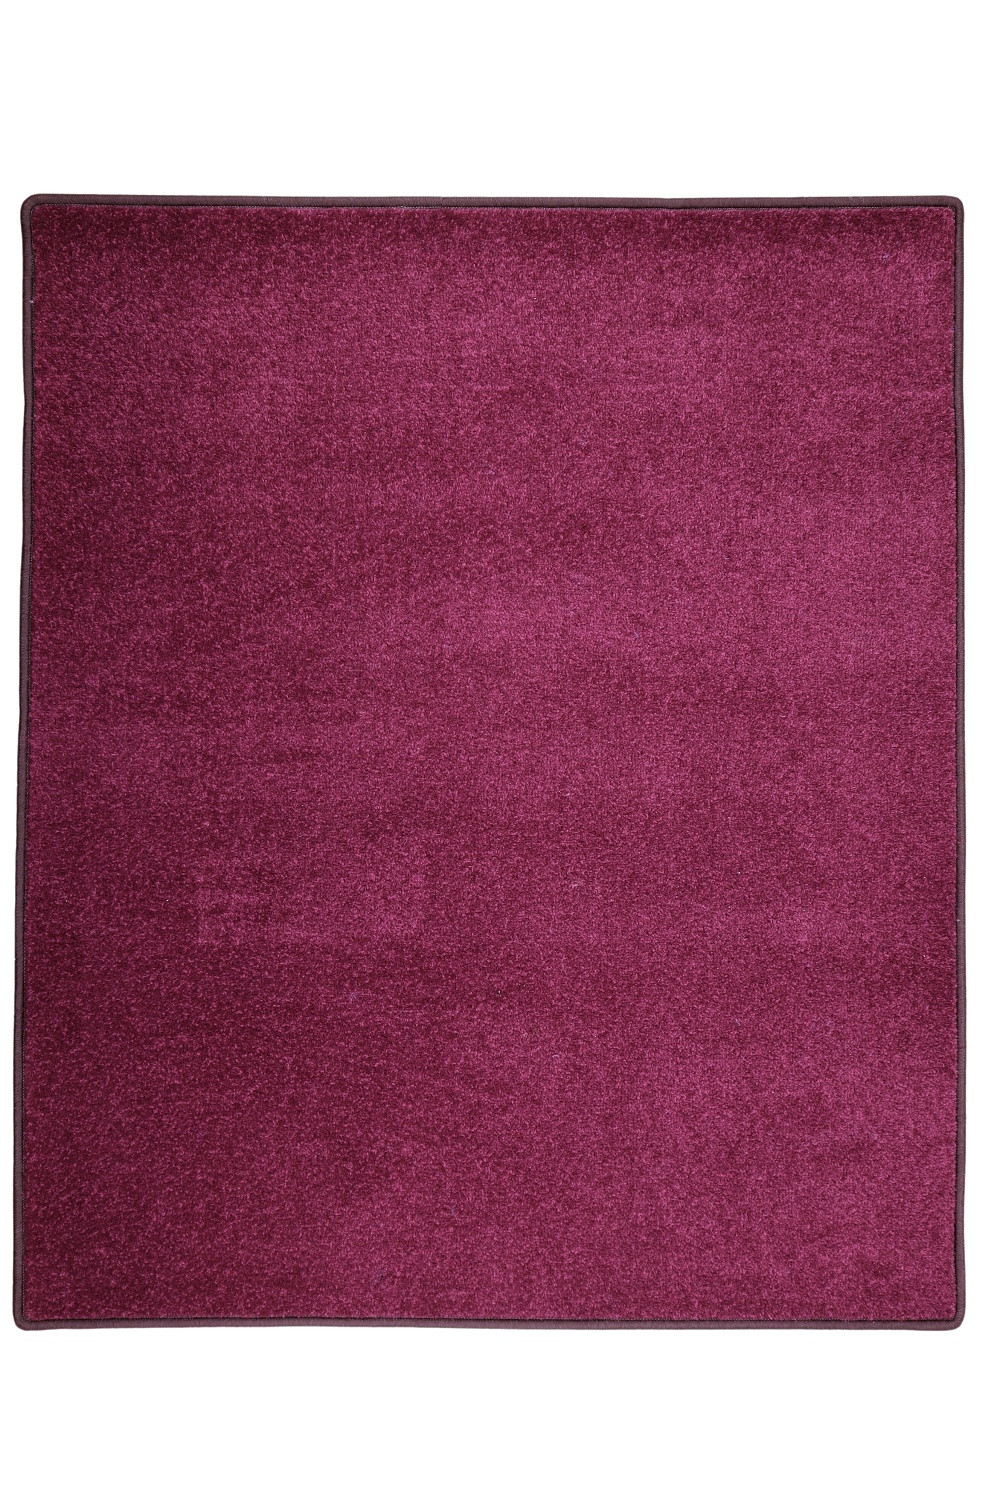 Kusový koberec Eton fialový 48 - 160x240 cm Vopi koberce 